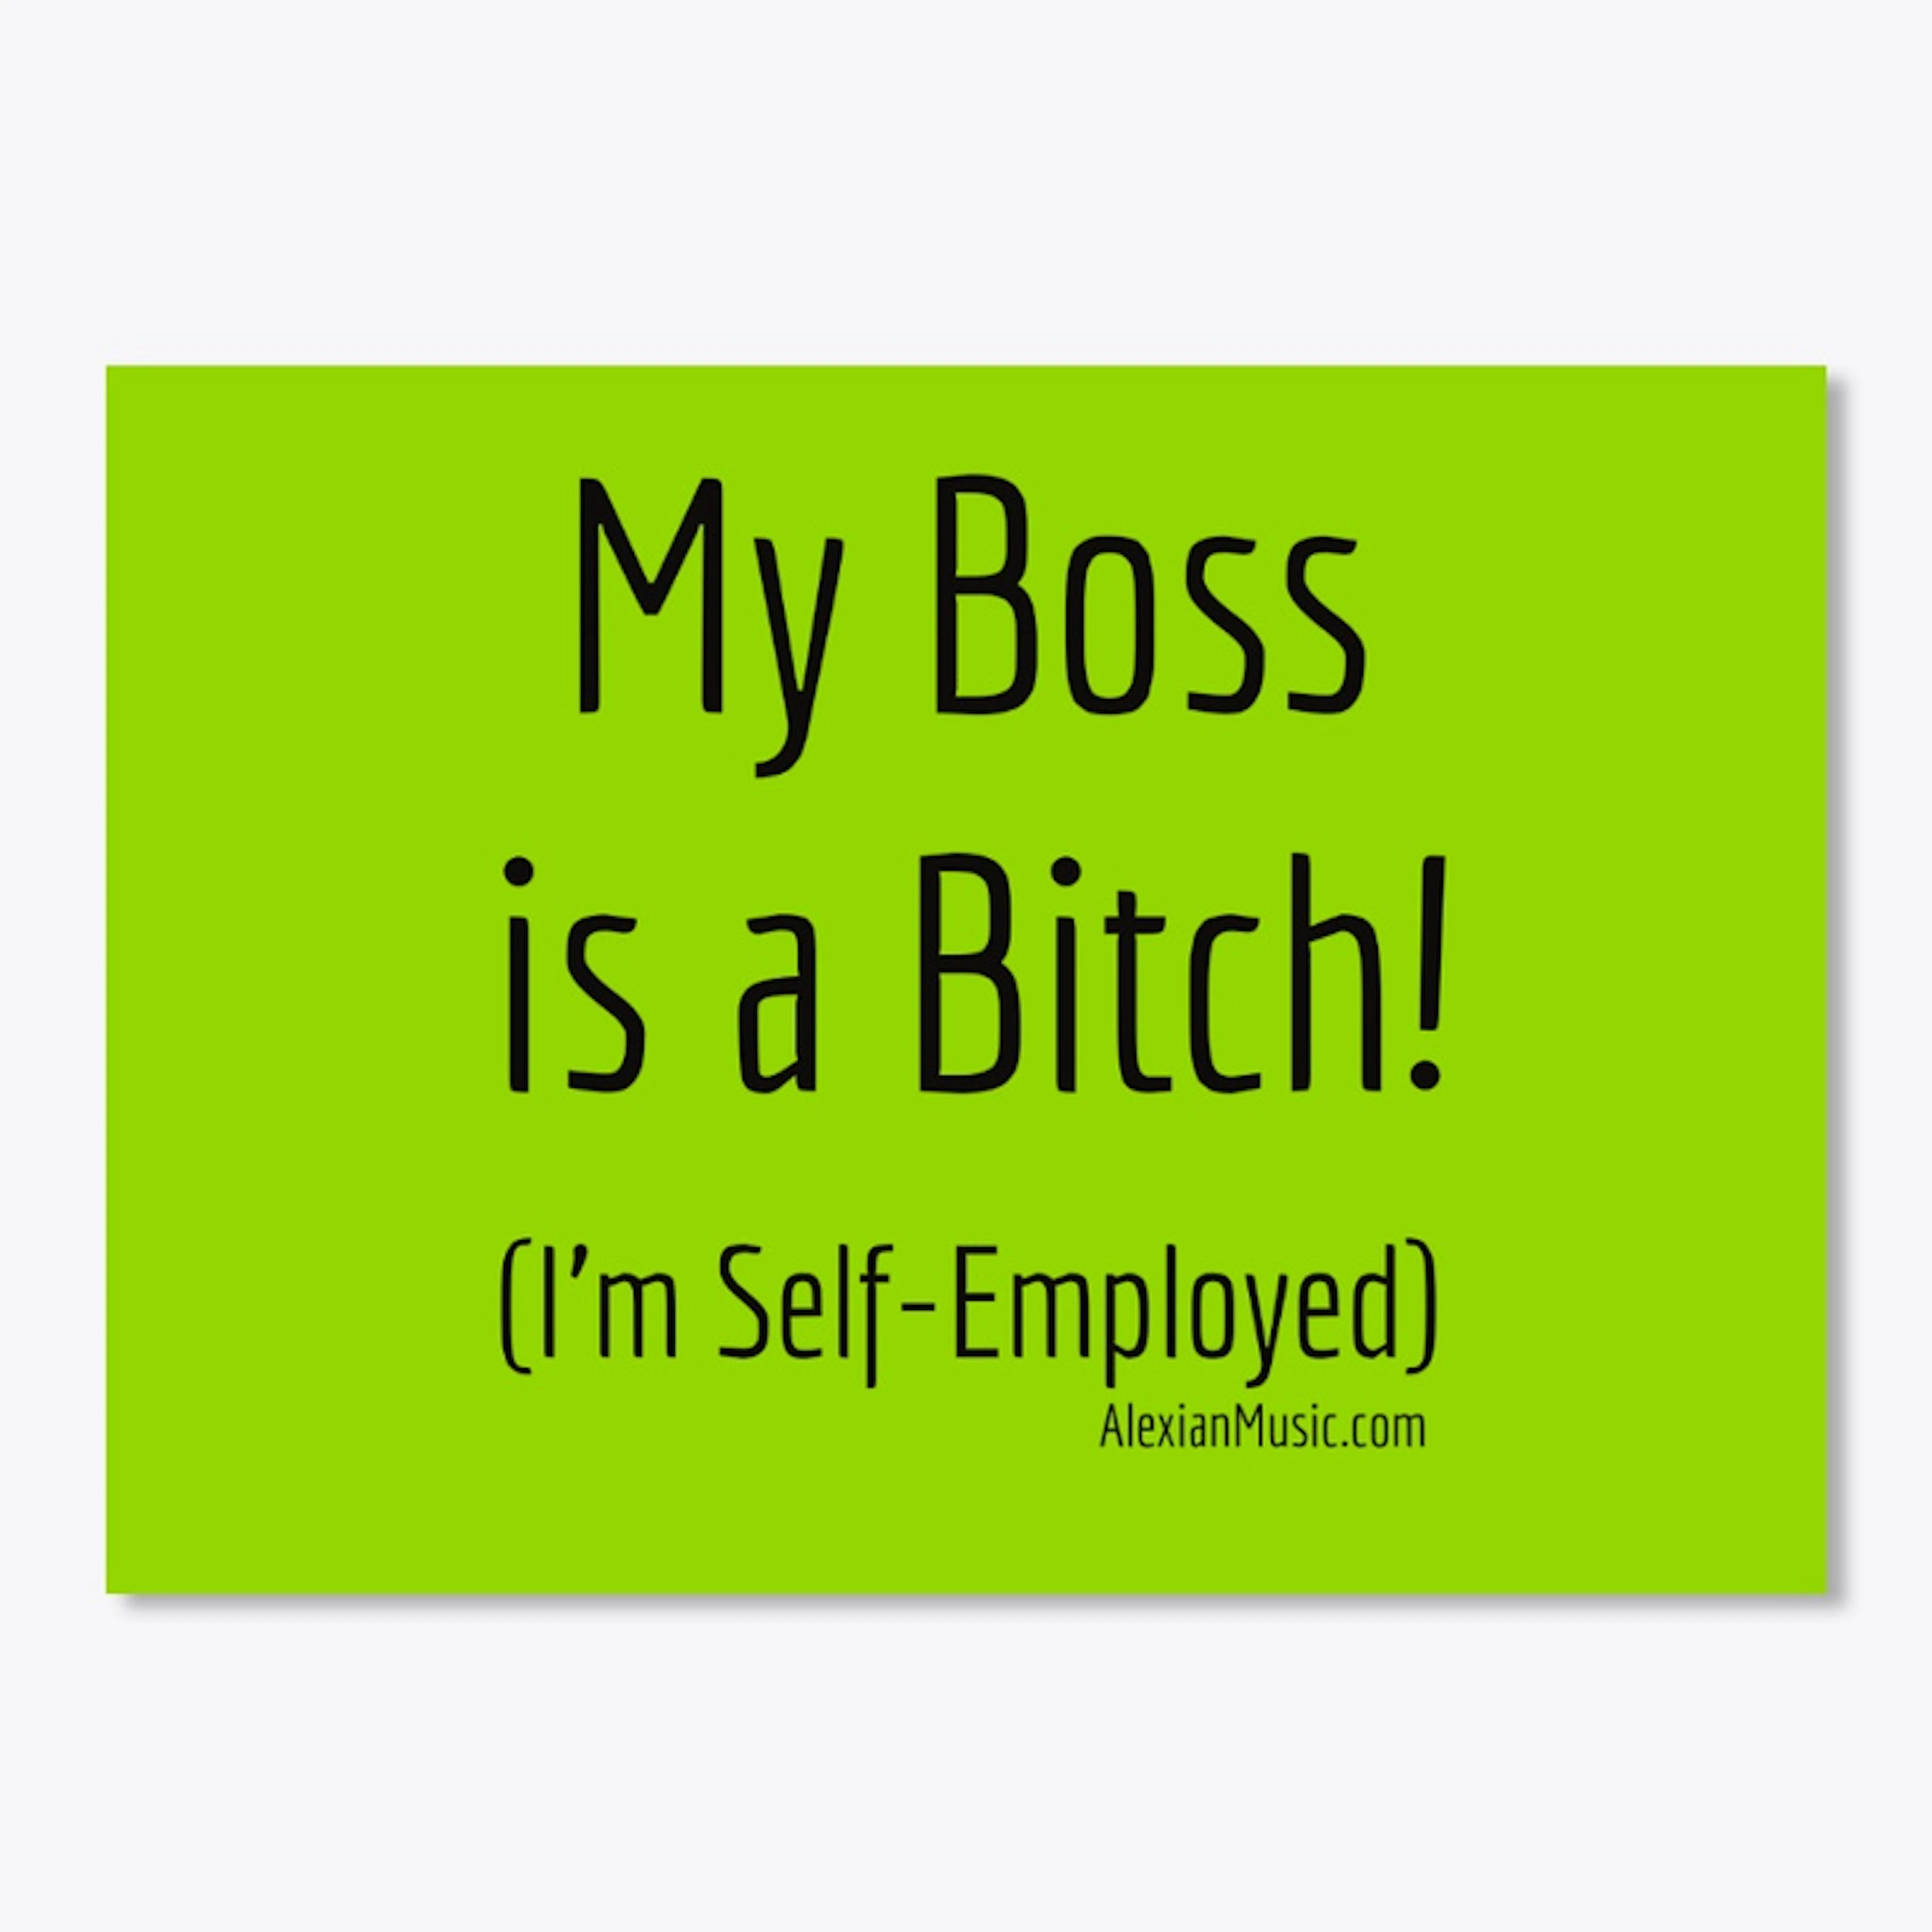 My Boss is a Bitch!